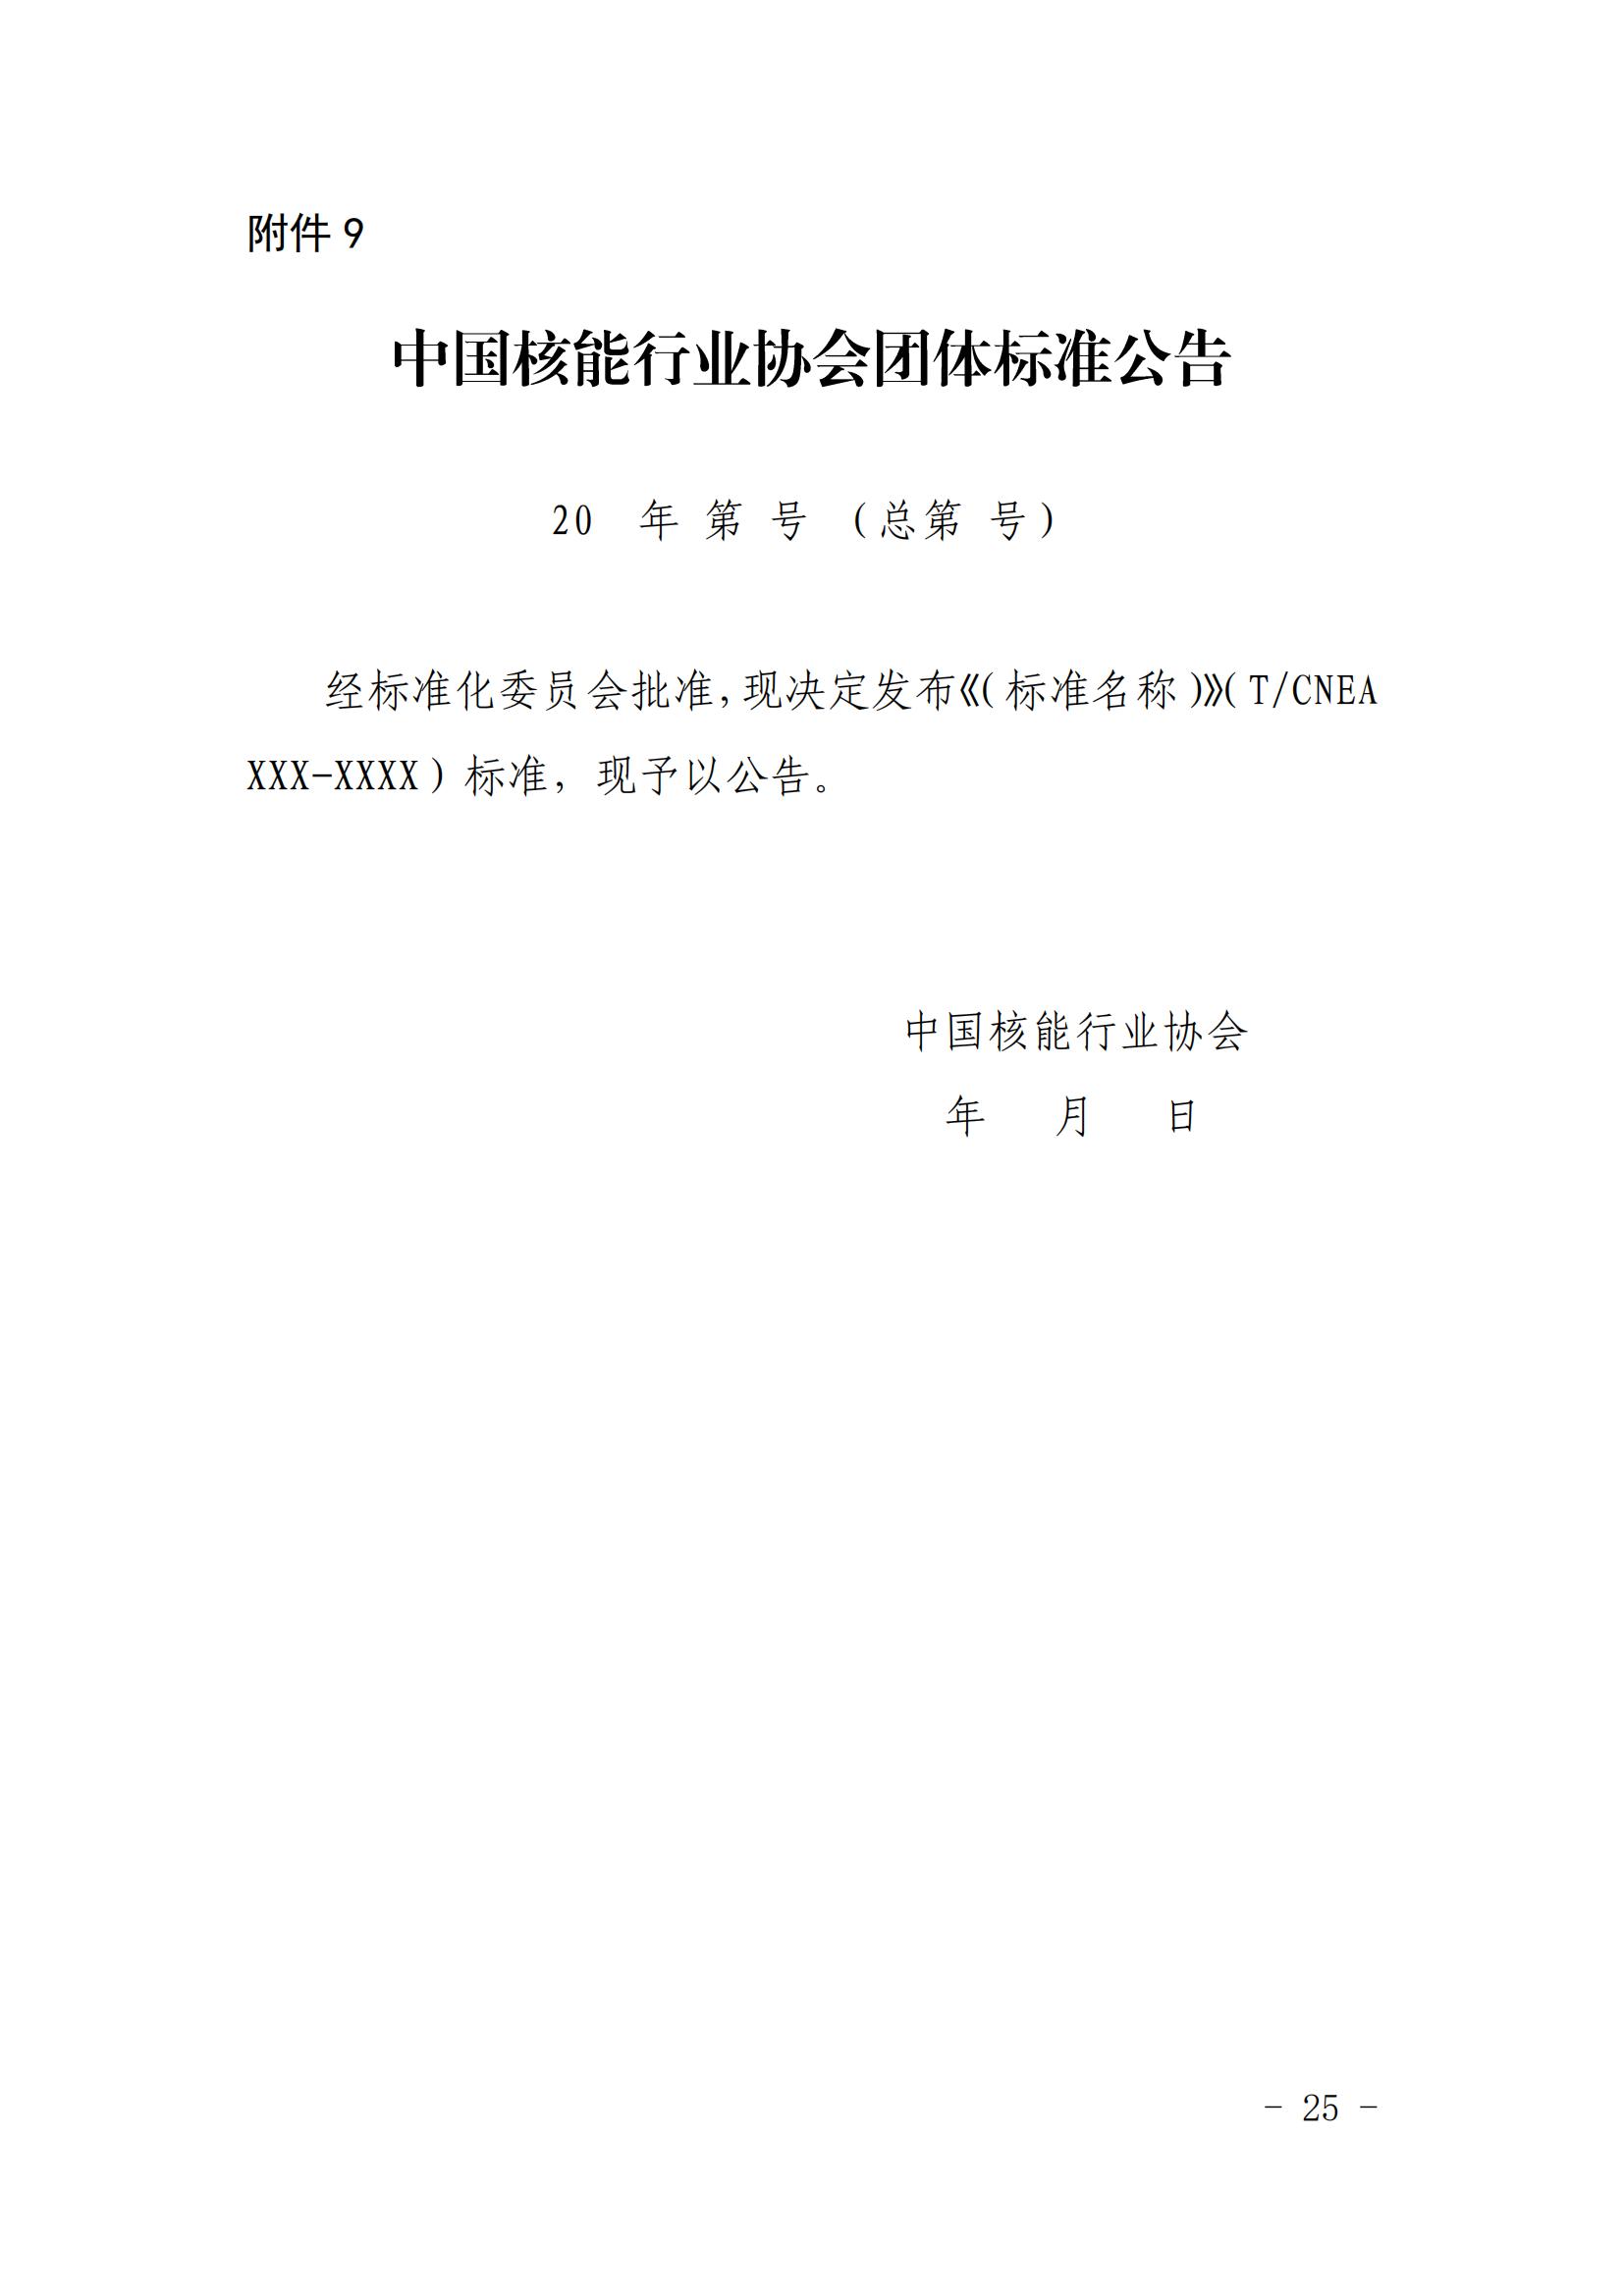 关于印发《中国核能行业协会团体标准管理办法（试行）》和《中国核能行业协会团体标准制修订细则（试行）》的通知_24.jpg